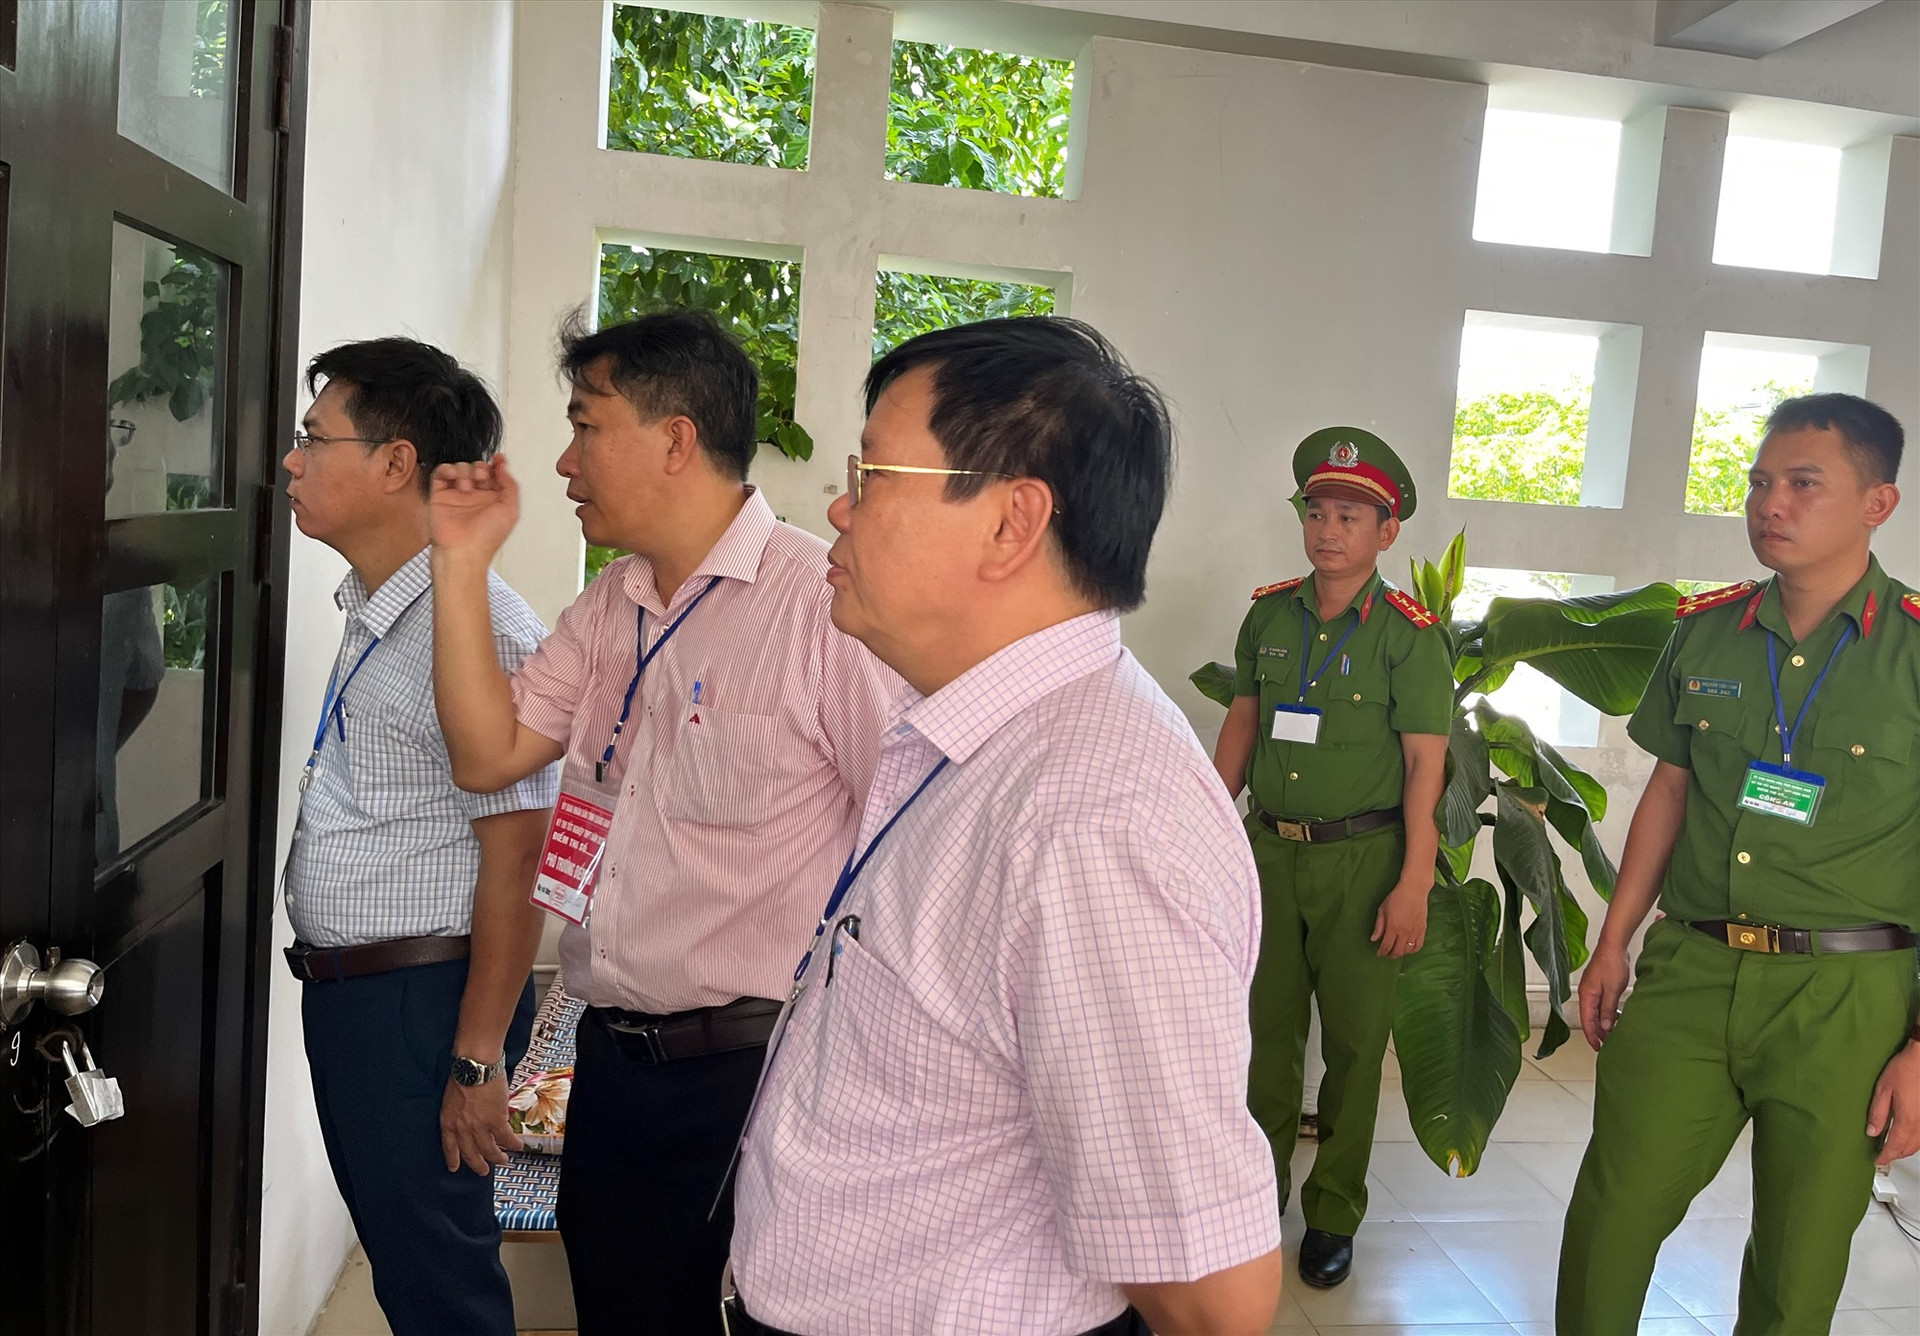 Giám đốc Sở GD-ĐT Thái Viết Tường cùng đoàn thanh tra thi của Bộ GD-ĐT kiểm tra điểm thi Trường THPT chuyên Nguyễn Bỉnh Khiêm. Ảnh: X.P